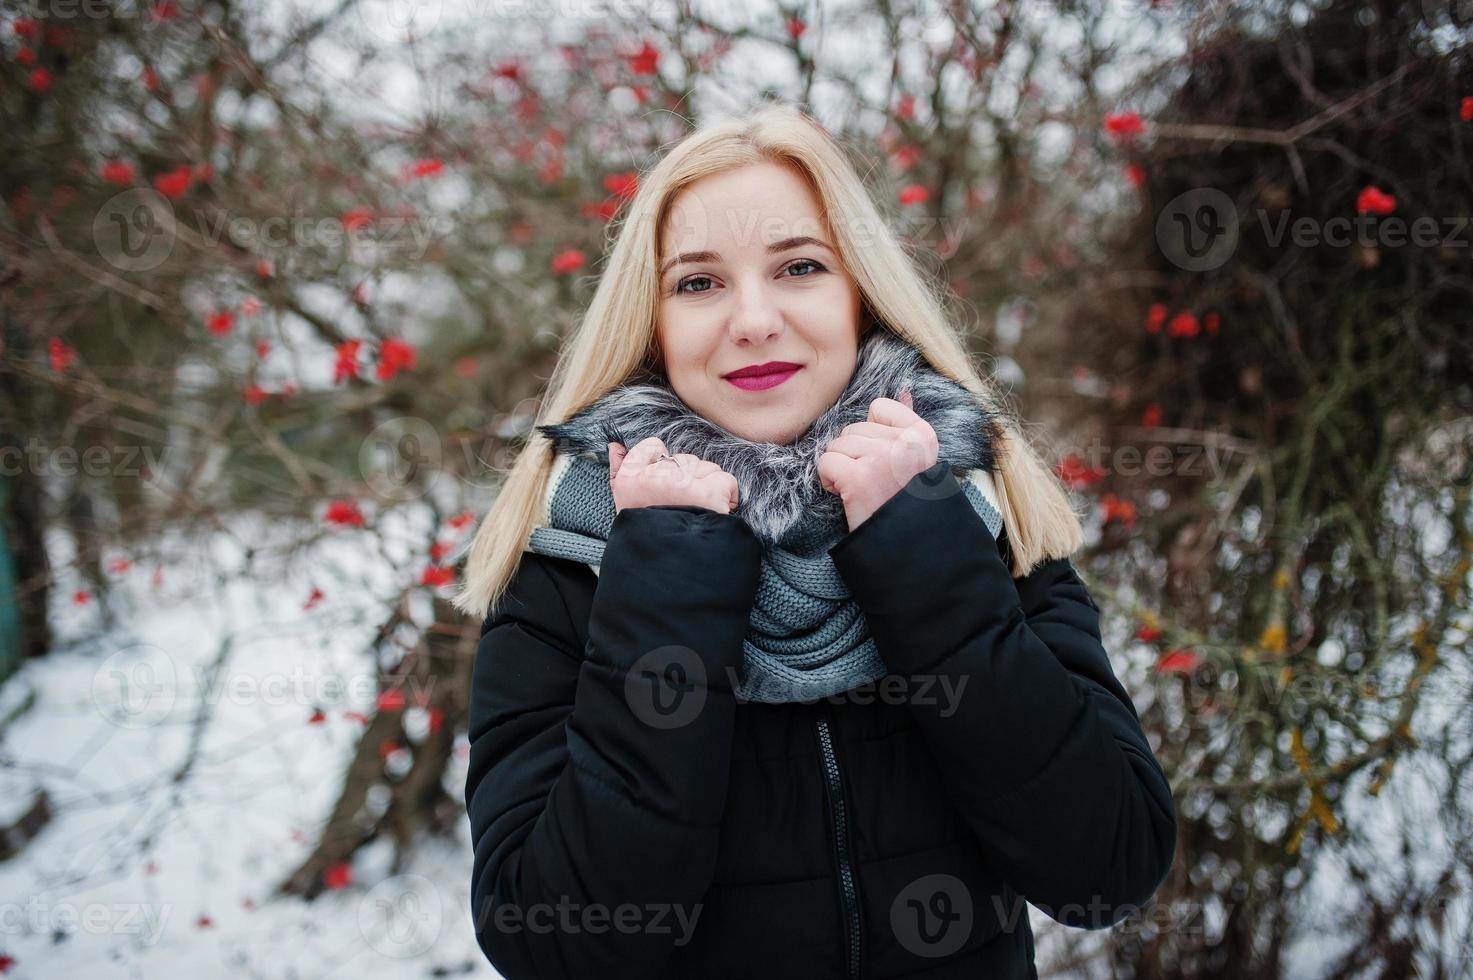 ragazza bionda posata in una giornata nevosa invernale. foto